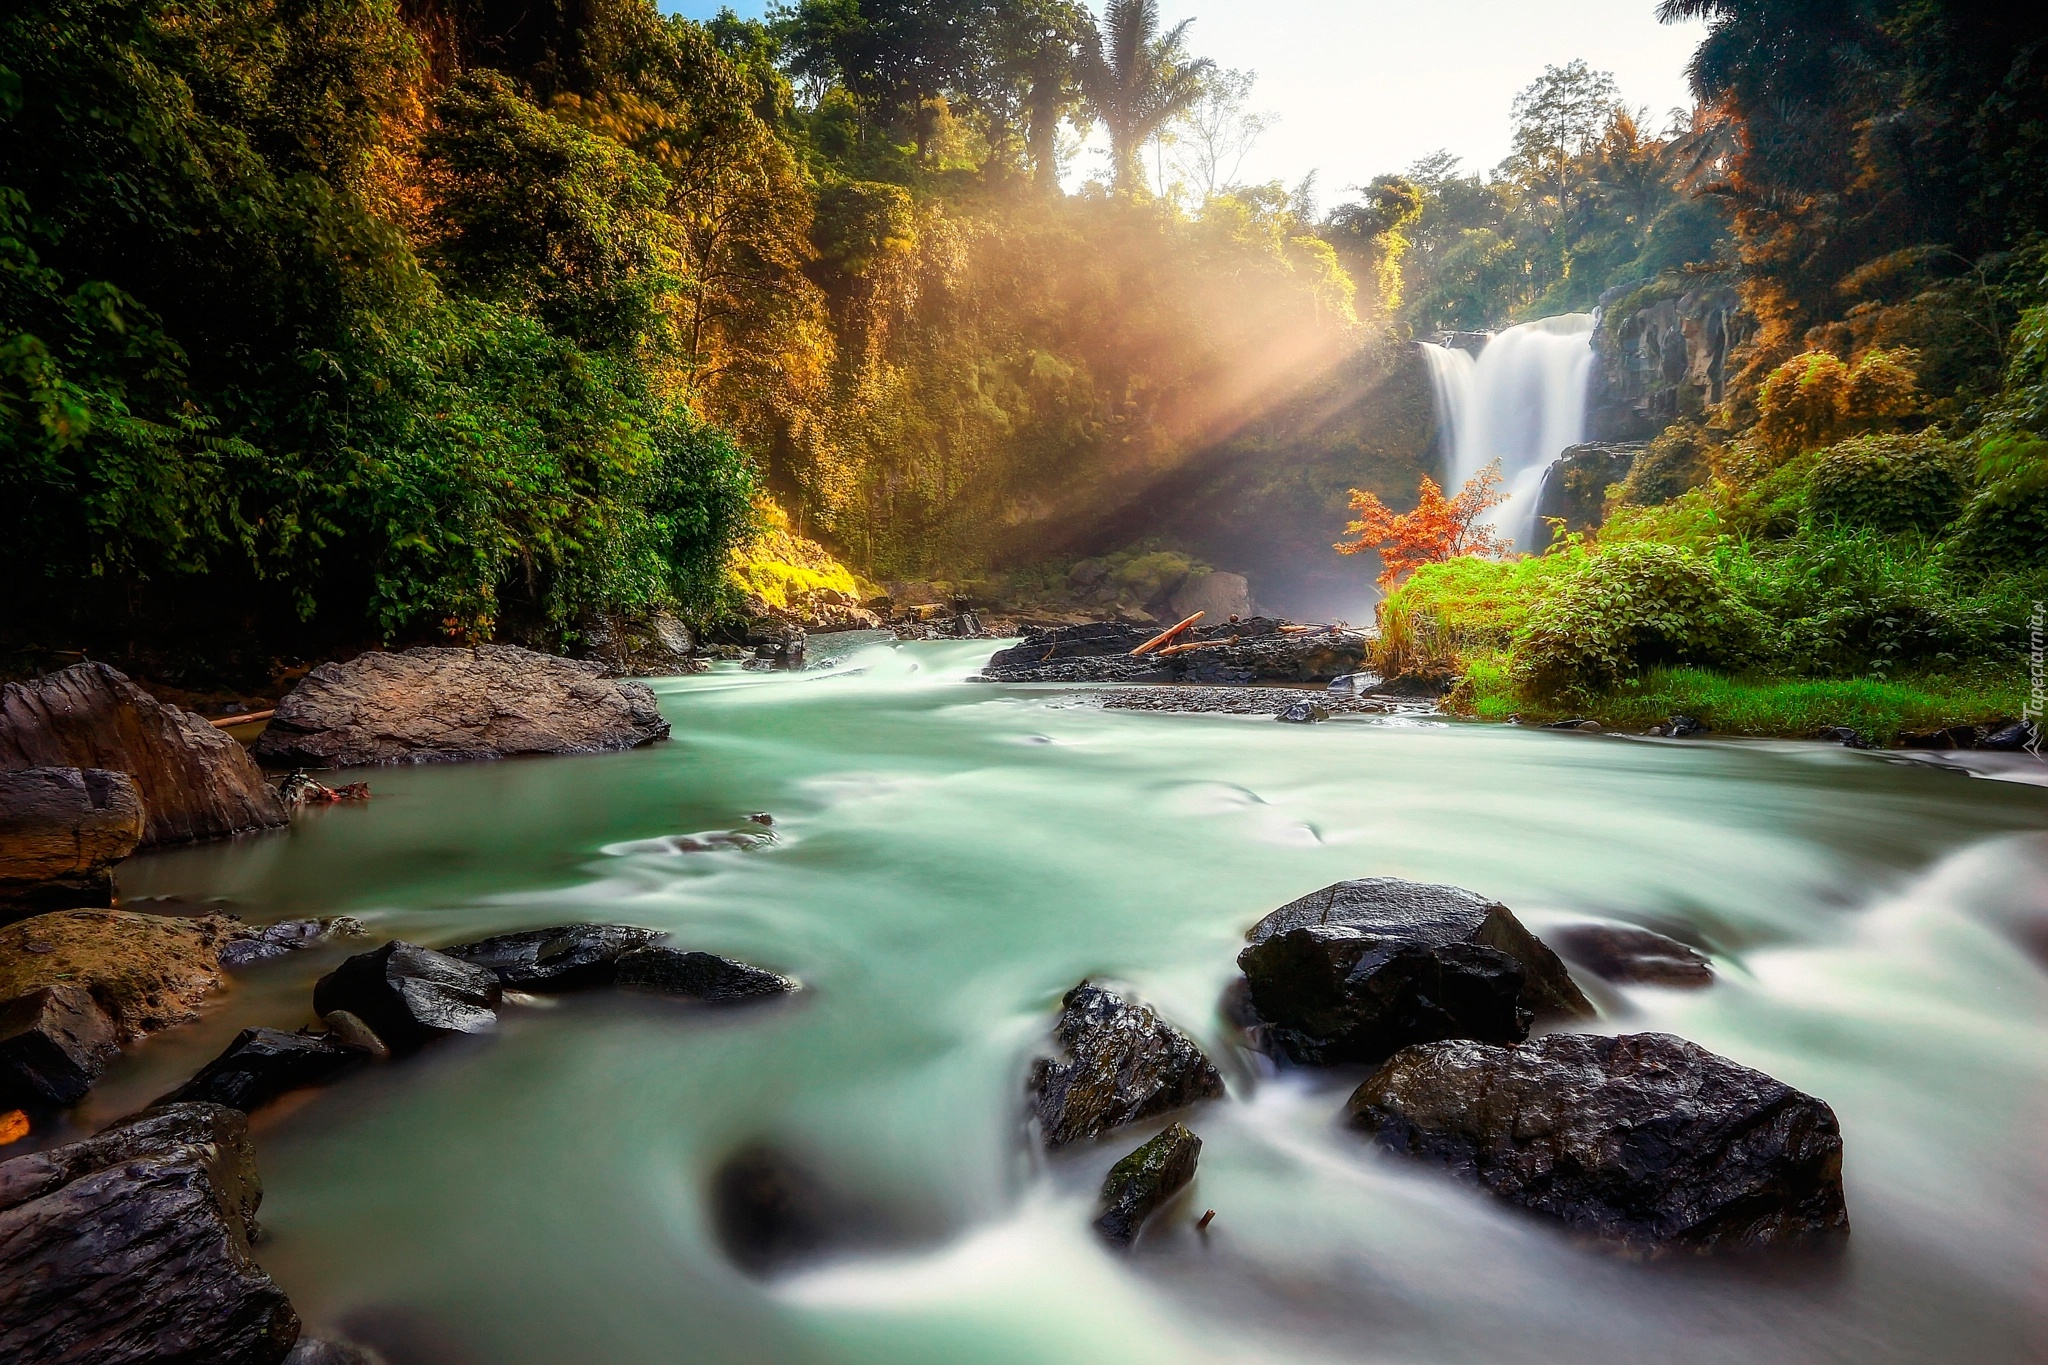 Indonezja, Wyspa Bali, Wioska Tegenungan Kemenuh, Wodospad Tegenungan, Rzeka, Skały, Kamienie, Roślinność, Drzewa